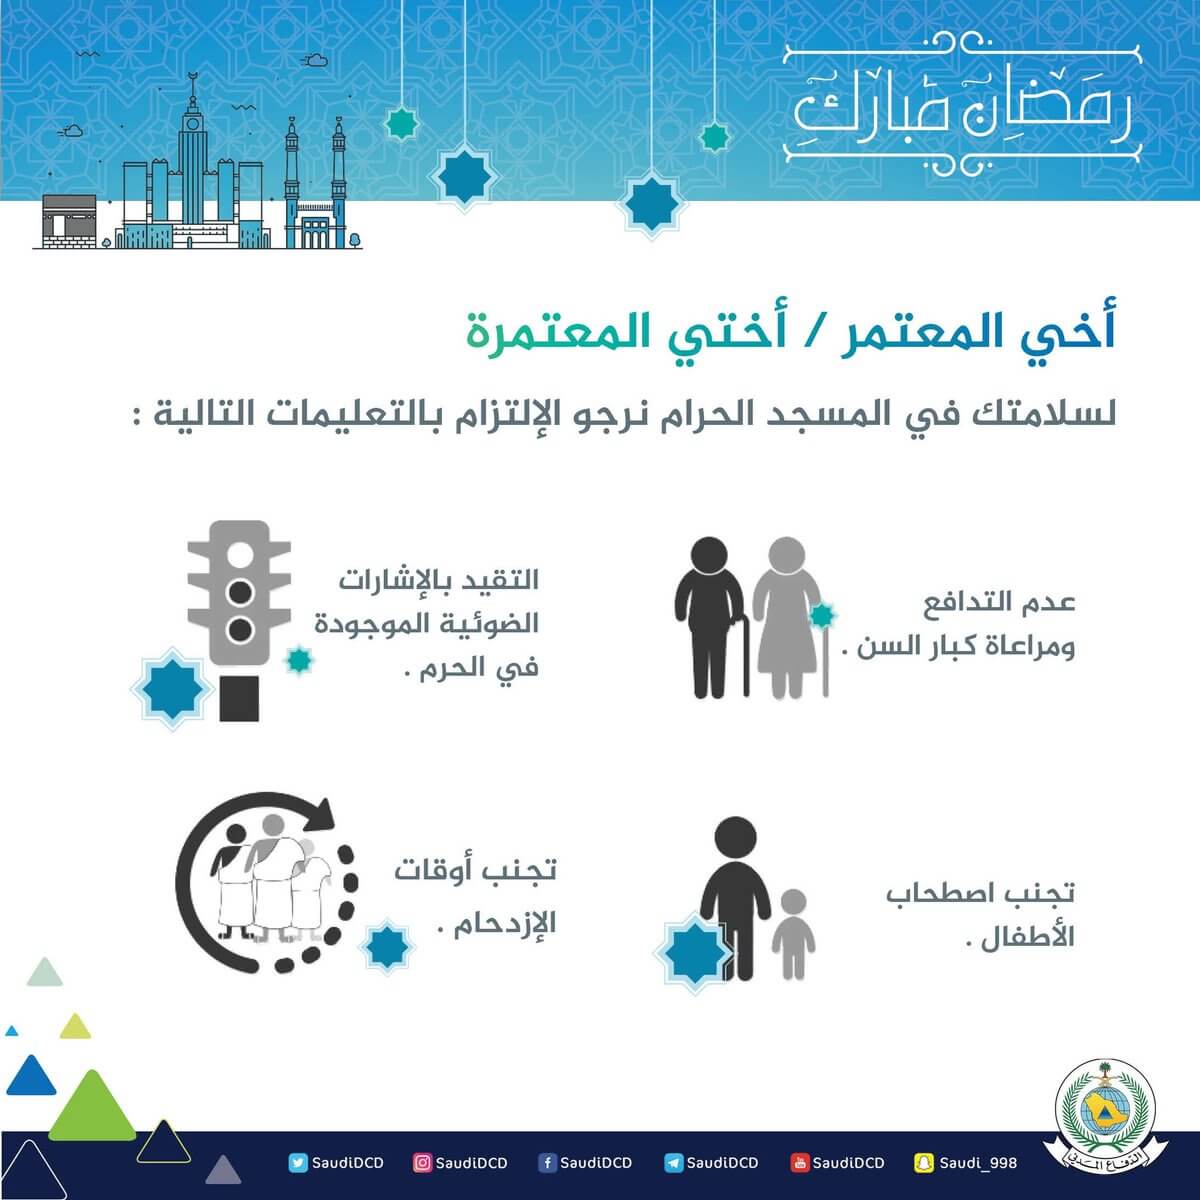 4 نصائح لحماية وسلامة المعتمرين في الحرم المكي ليلة 27 رمضان